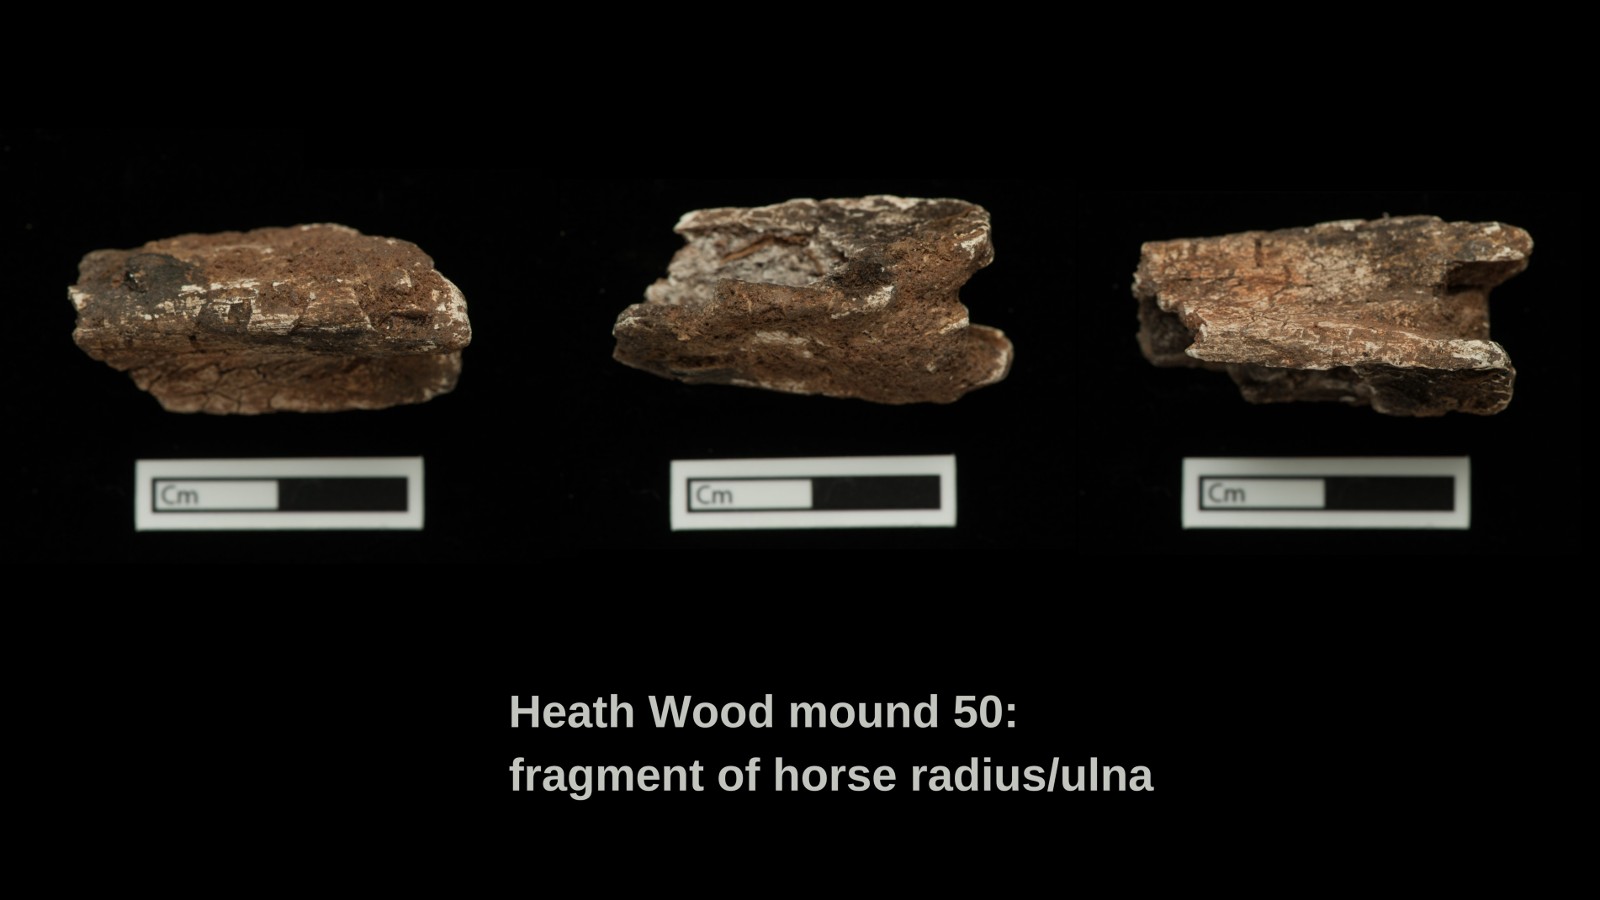 جزء من عينة نصف قطر حصان محترق / زند من تل الدفن 50 في هيث وود.